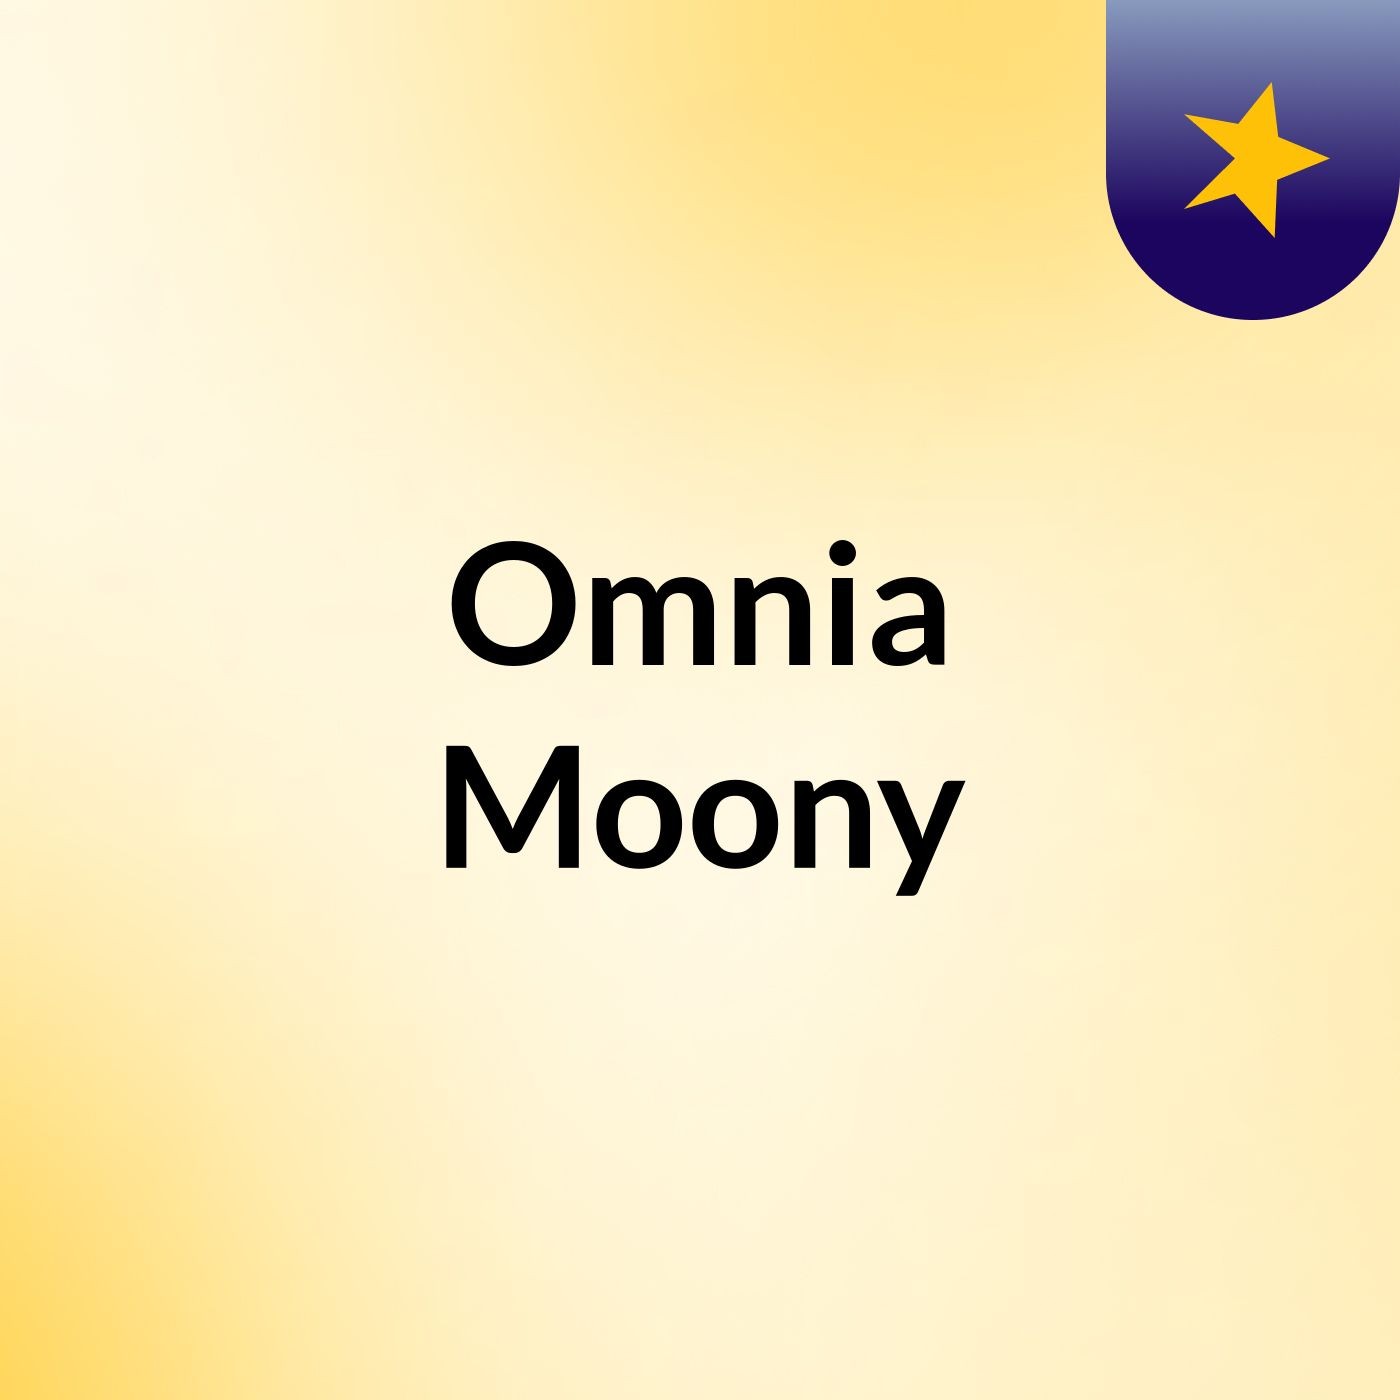 Omnia Moony